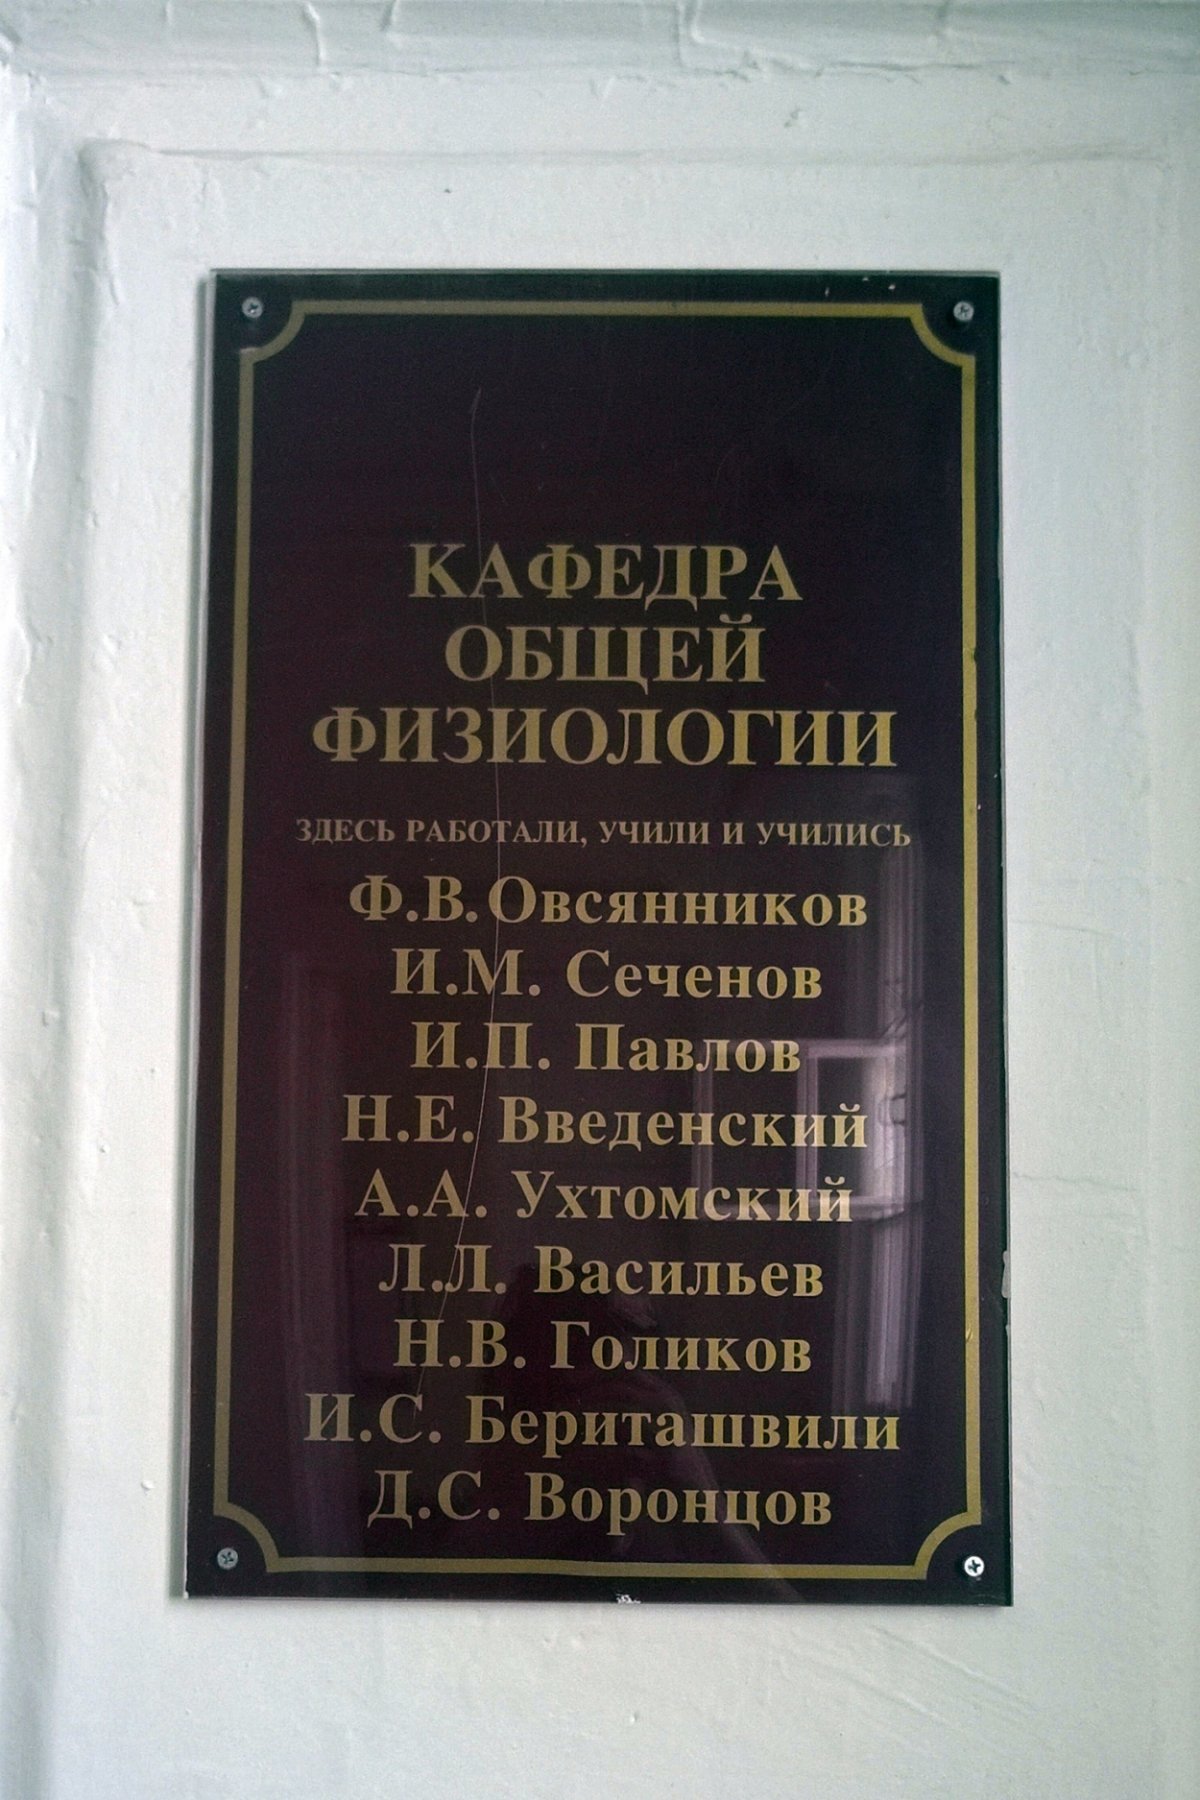 Памятных табличках в здании СПБГУ на 22-й линии.